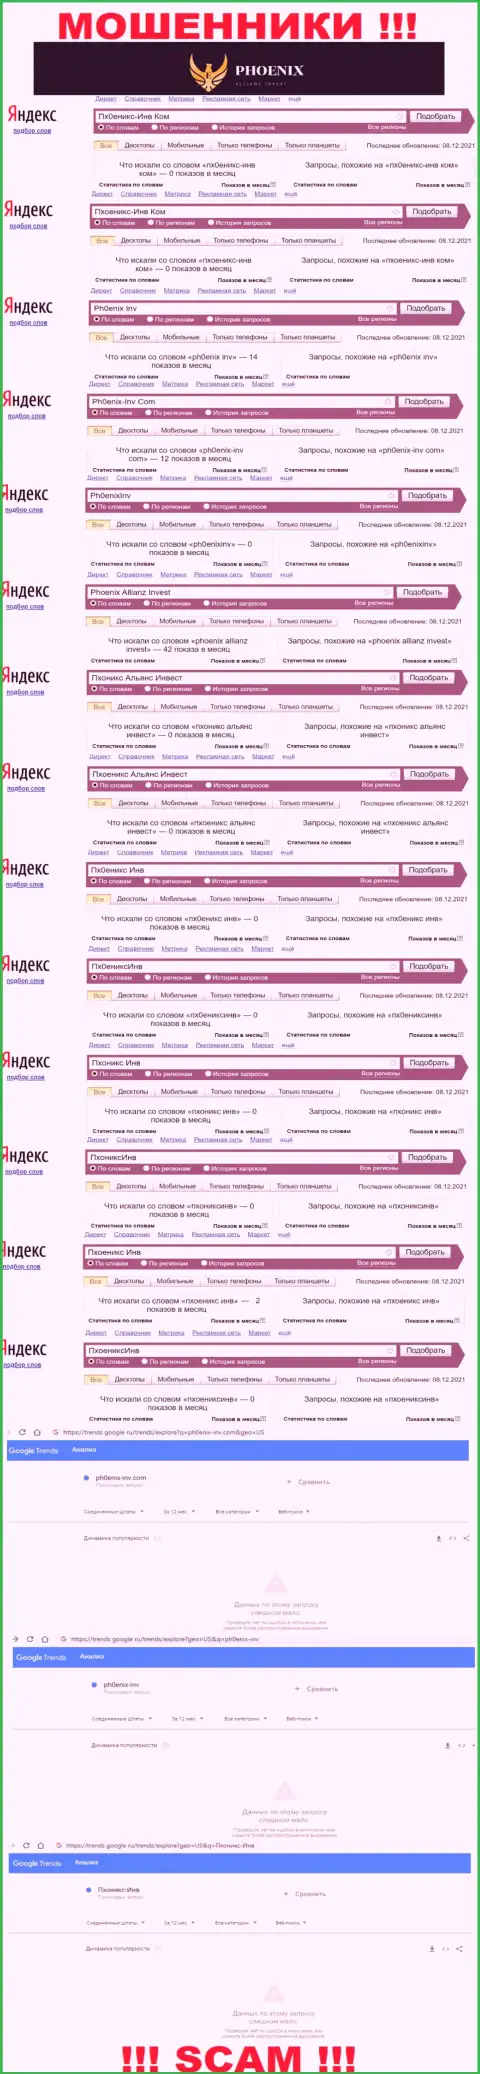 Скрин статистики онлайн запросов по преступно действующей конторе Ph0enix-Inv Com